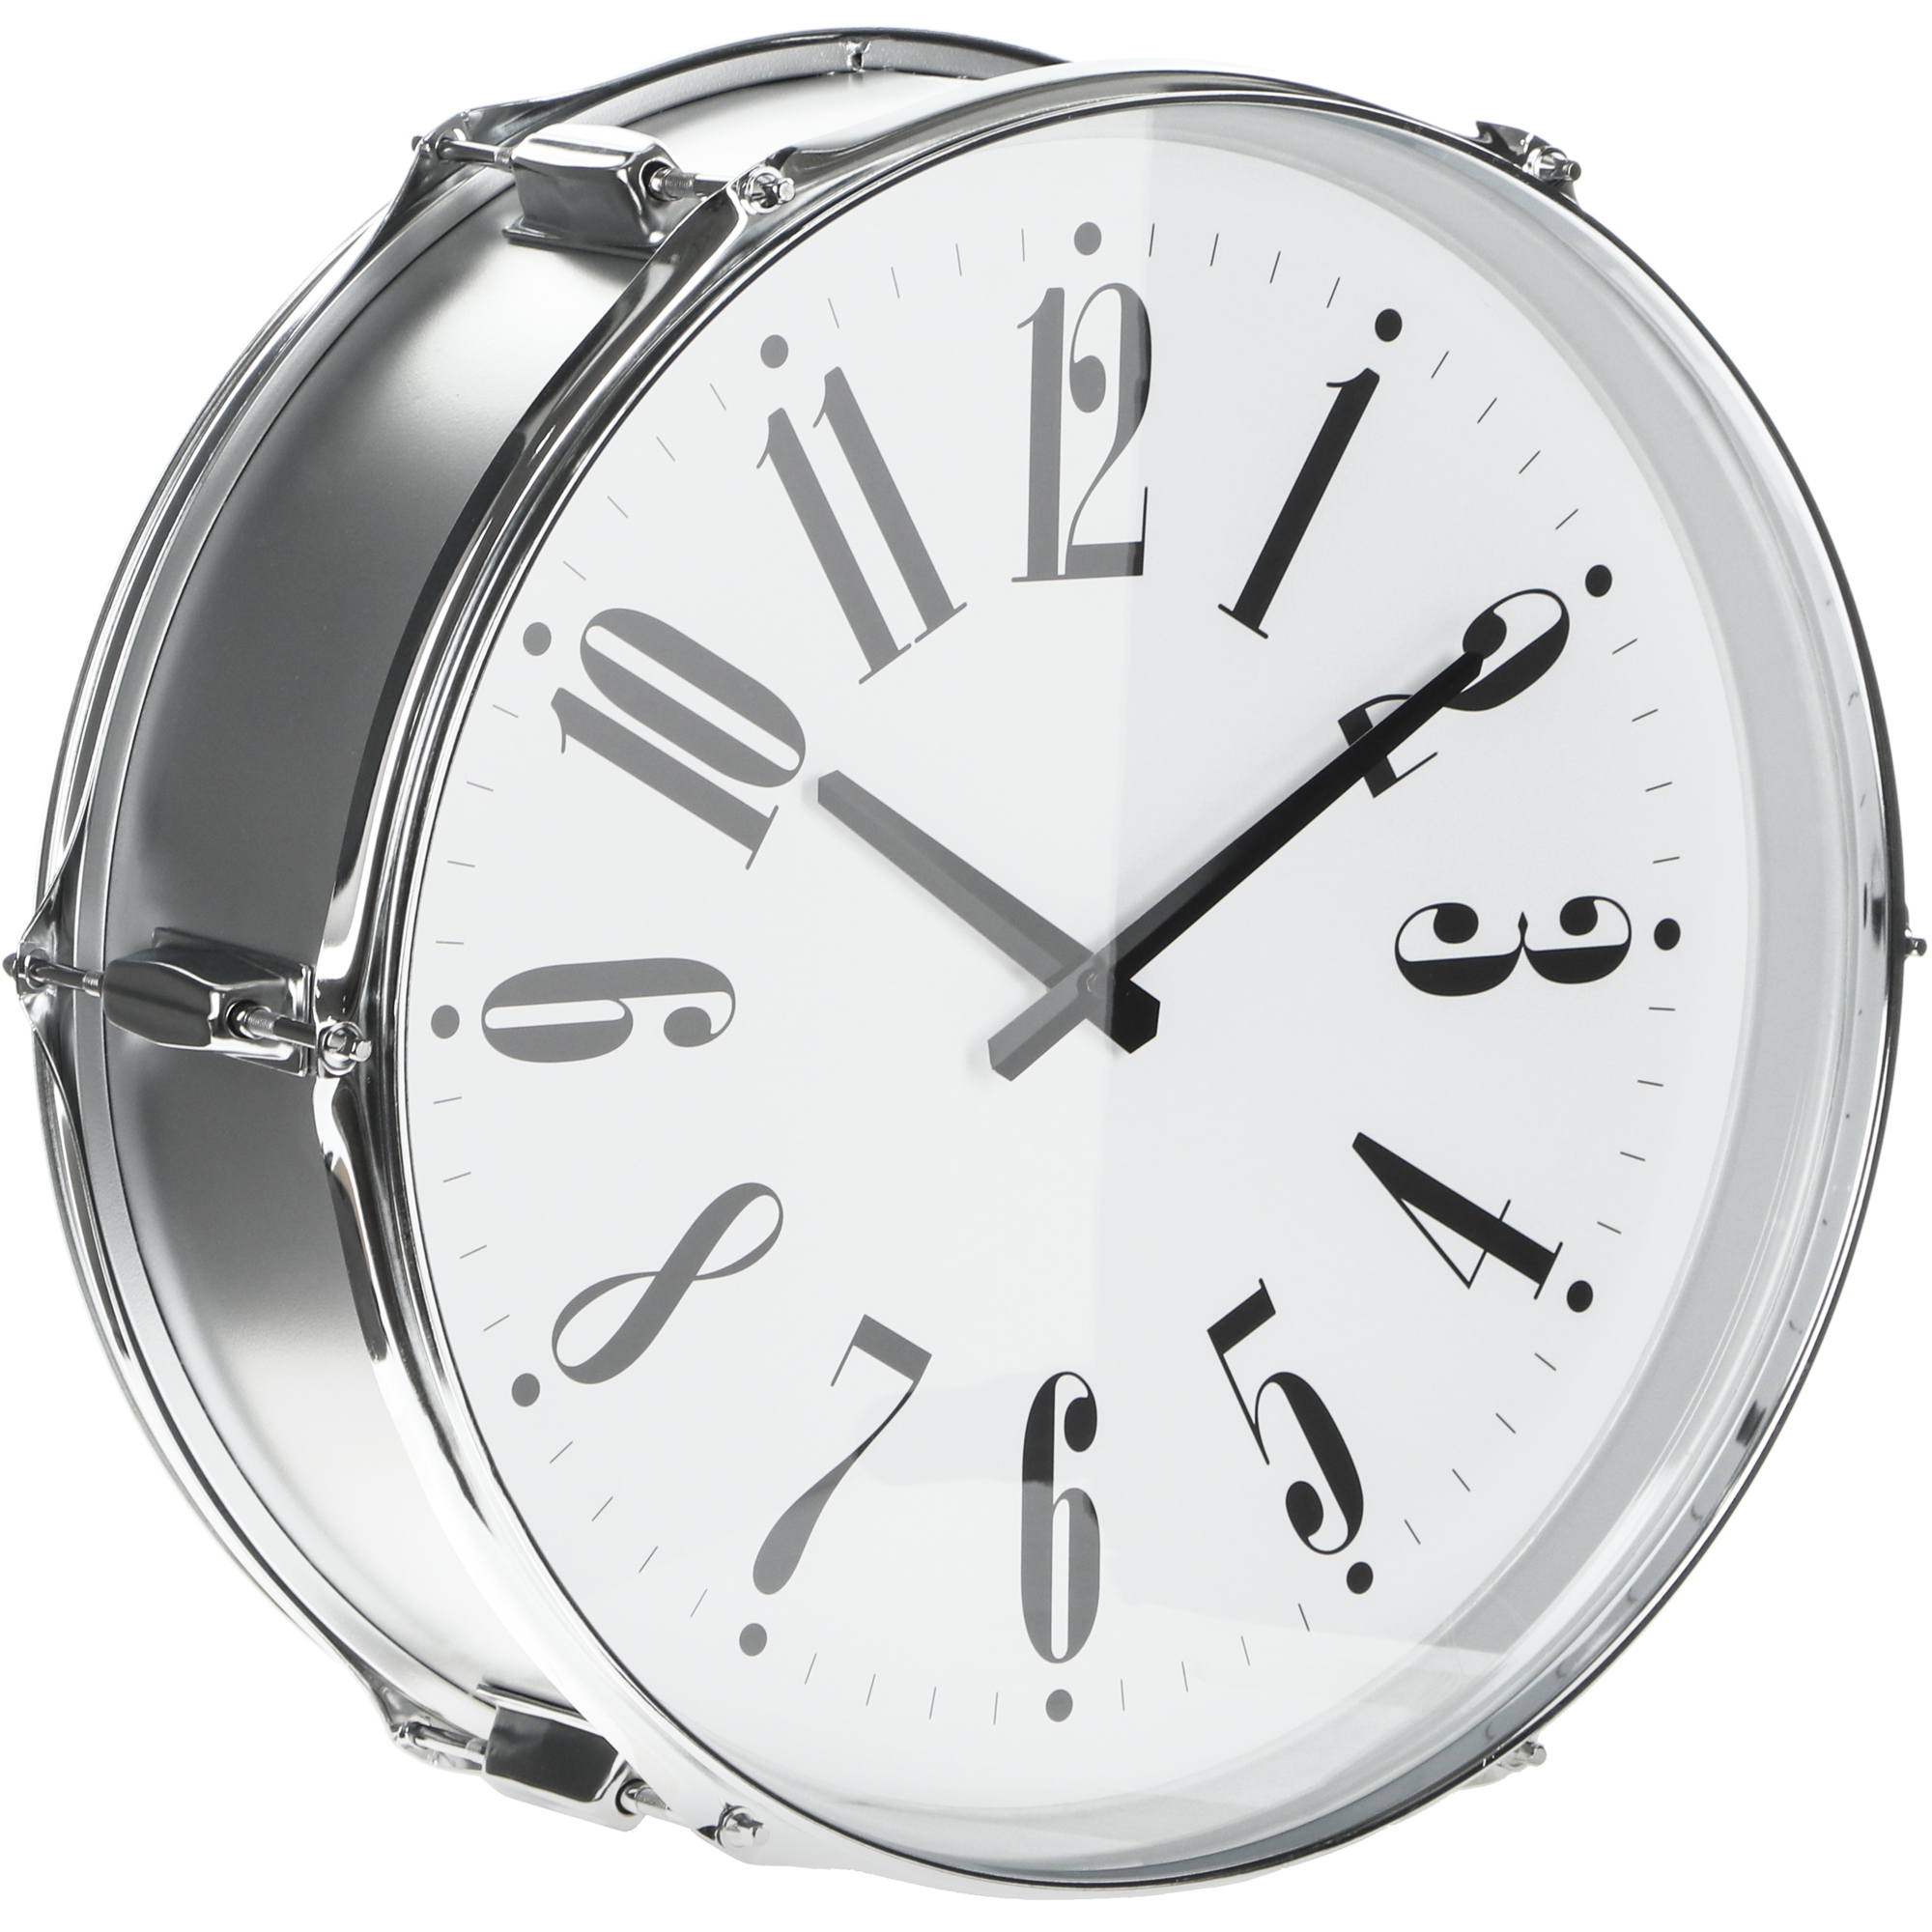 Часы настенные IsTime Drum серебряные 44,5х17,3х43,5 см часы настенные istime drum синие 39 5х17 3х37 см